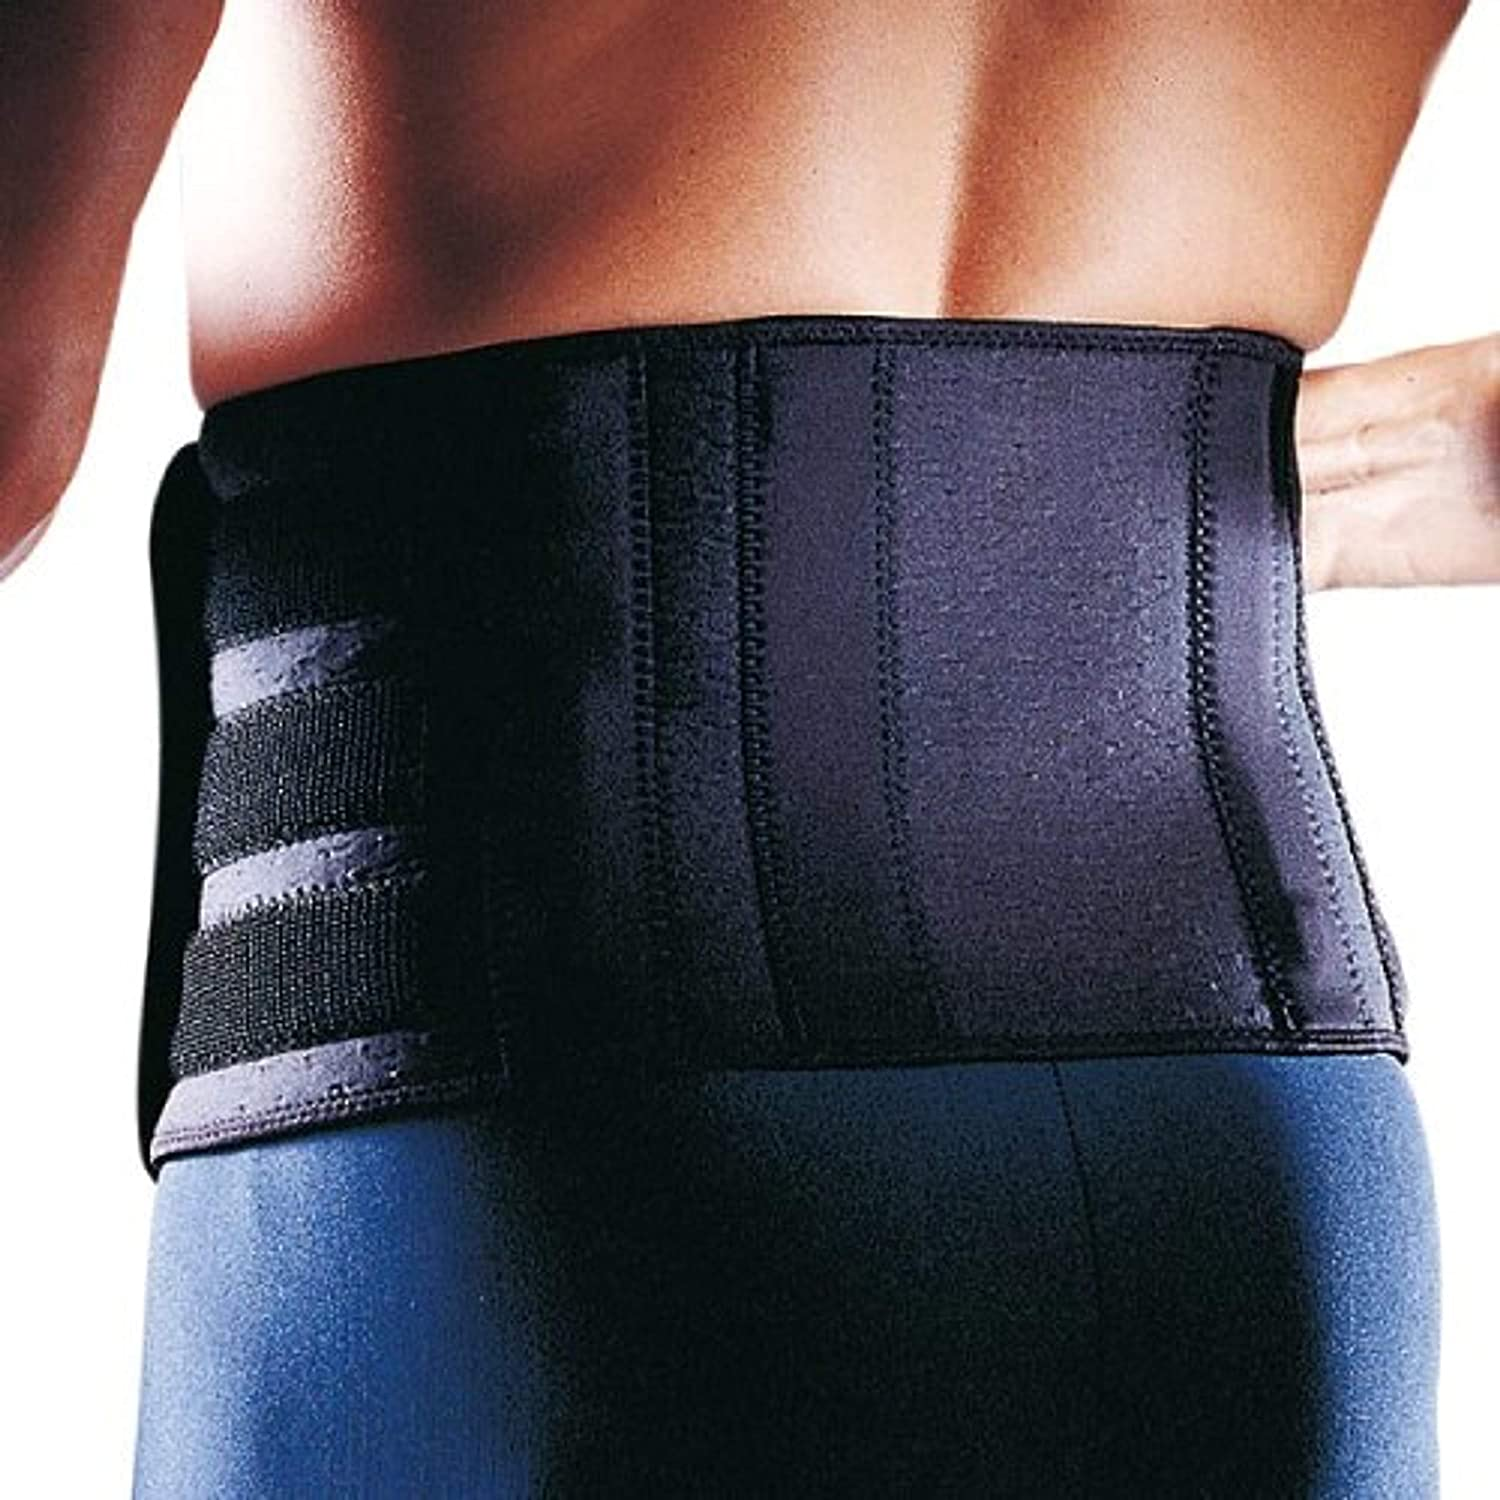 Rücken-Bandage - Rückenschutz - Rückenstütze aus der Extreme Serie, Größe:Universalgröße, Farbe:schwarz